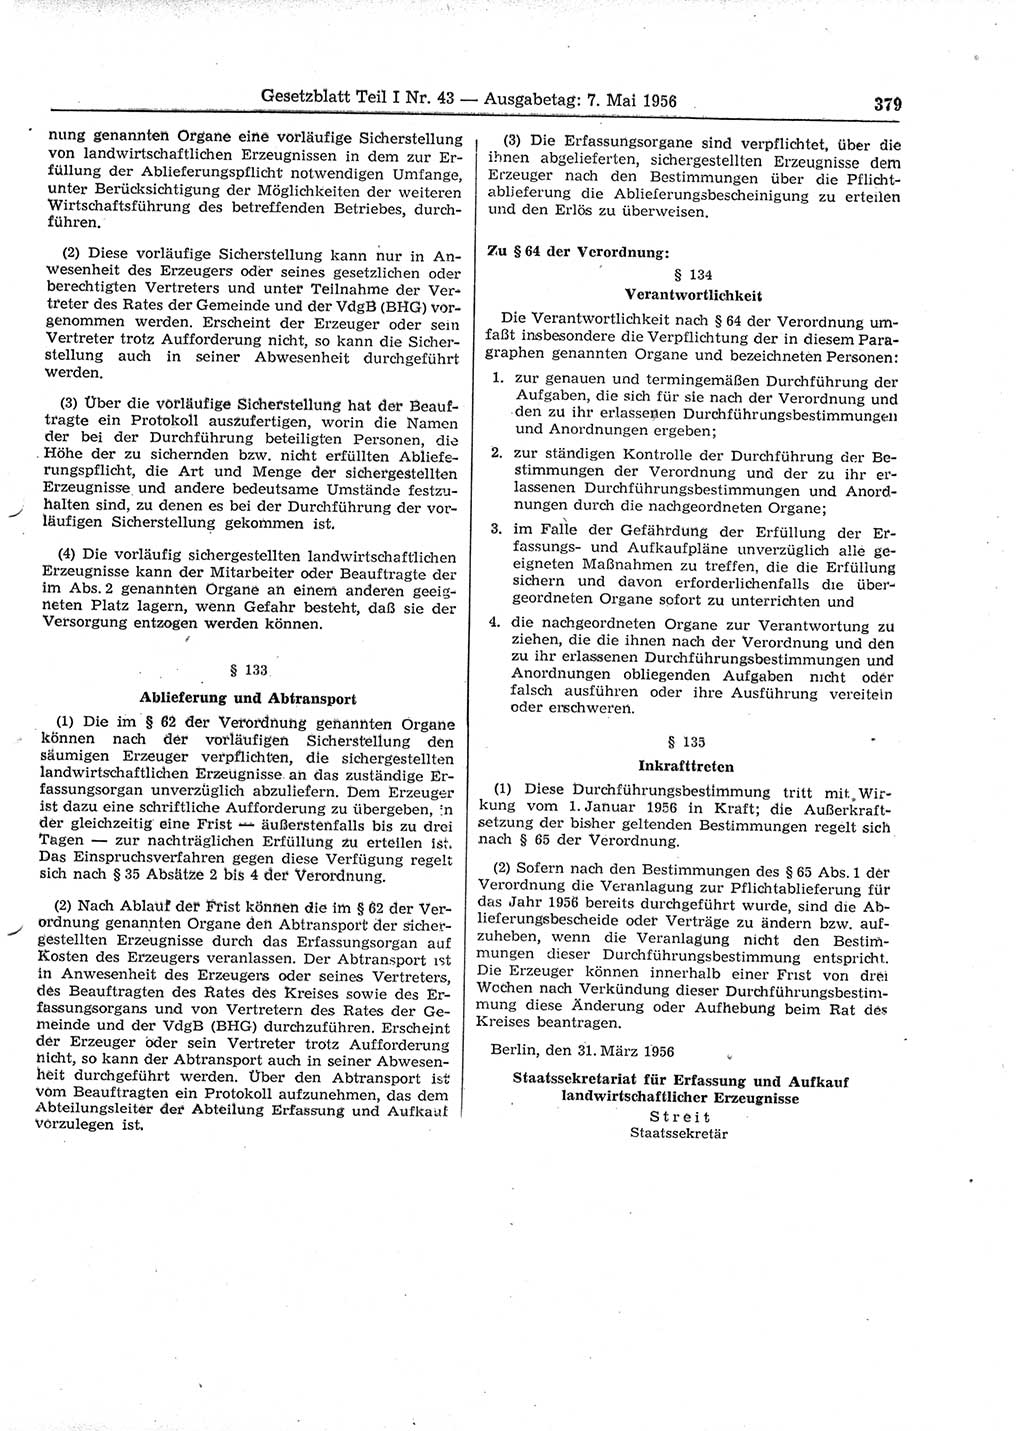 Gesetzblatt (GBl.) der Deutschen Demokratischen Republik (DDR) Teil Ⅰ 1956, Seite 379 (GBl. DDR Ⅰ 1956, S. 379)